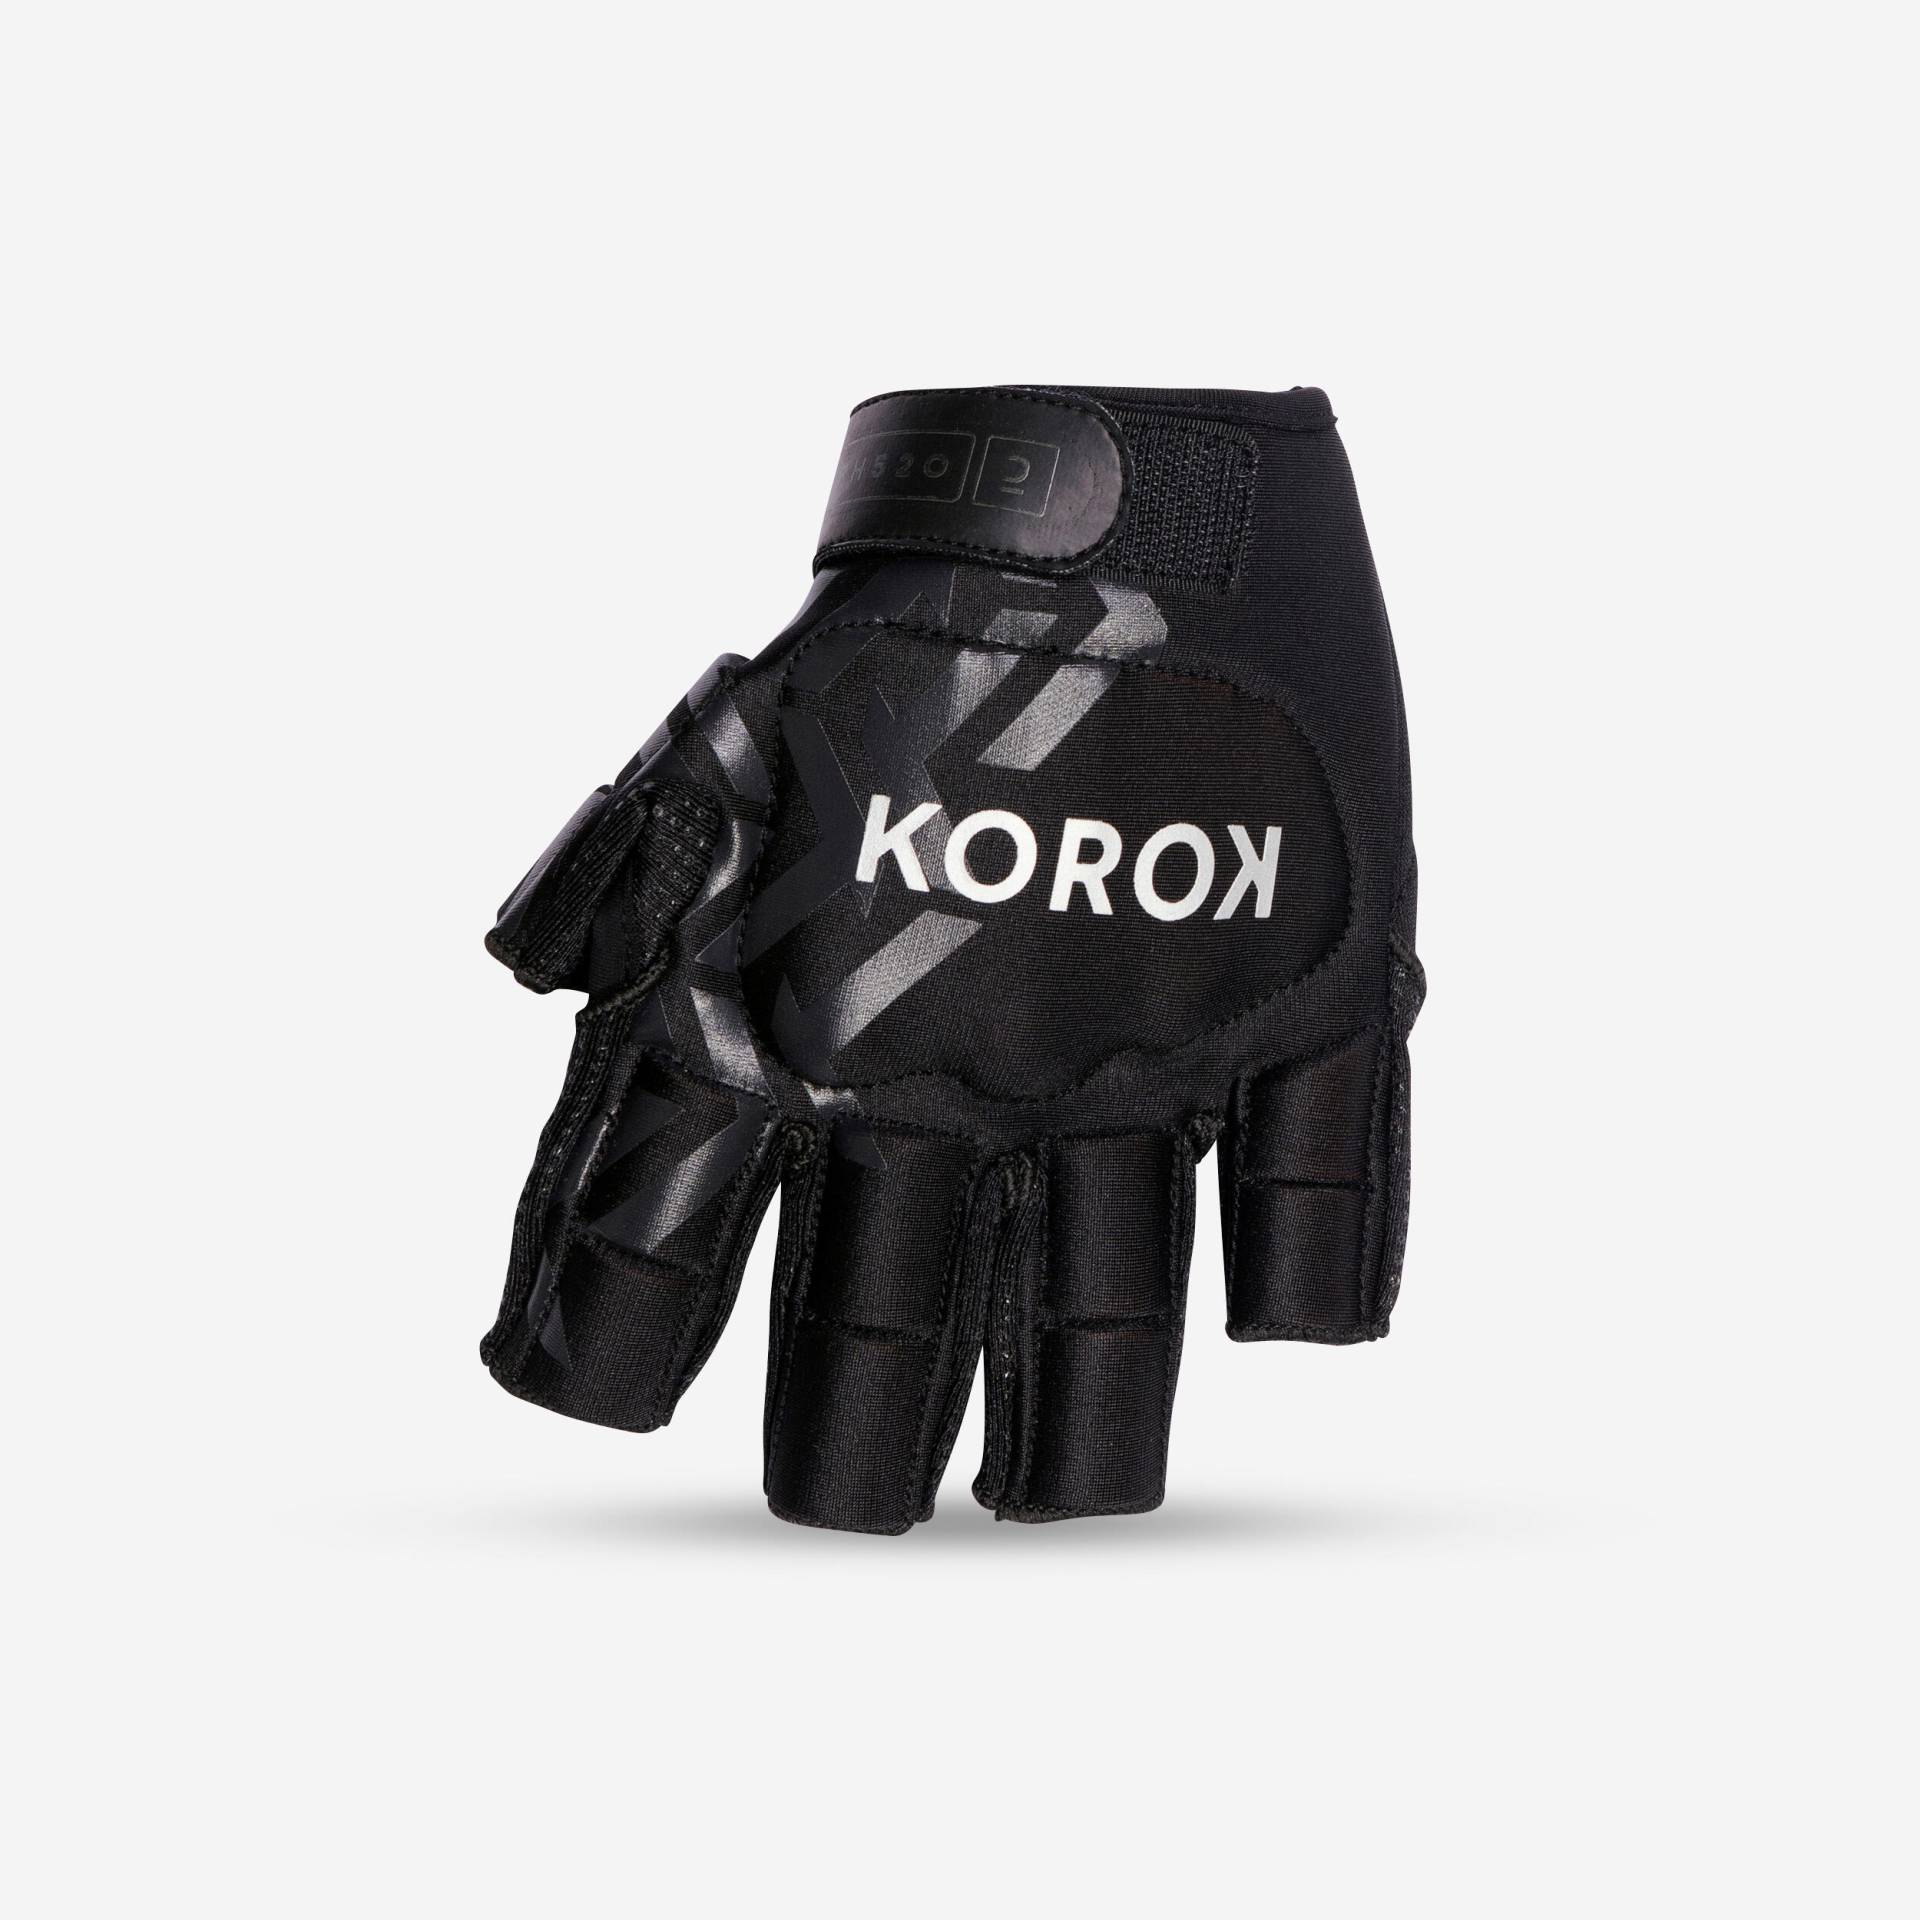 Damen/Herren 3/4-Finger Hockey Handschuh - FH520 schwarz/grau von KOROK